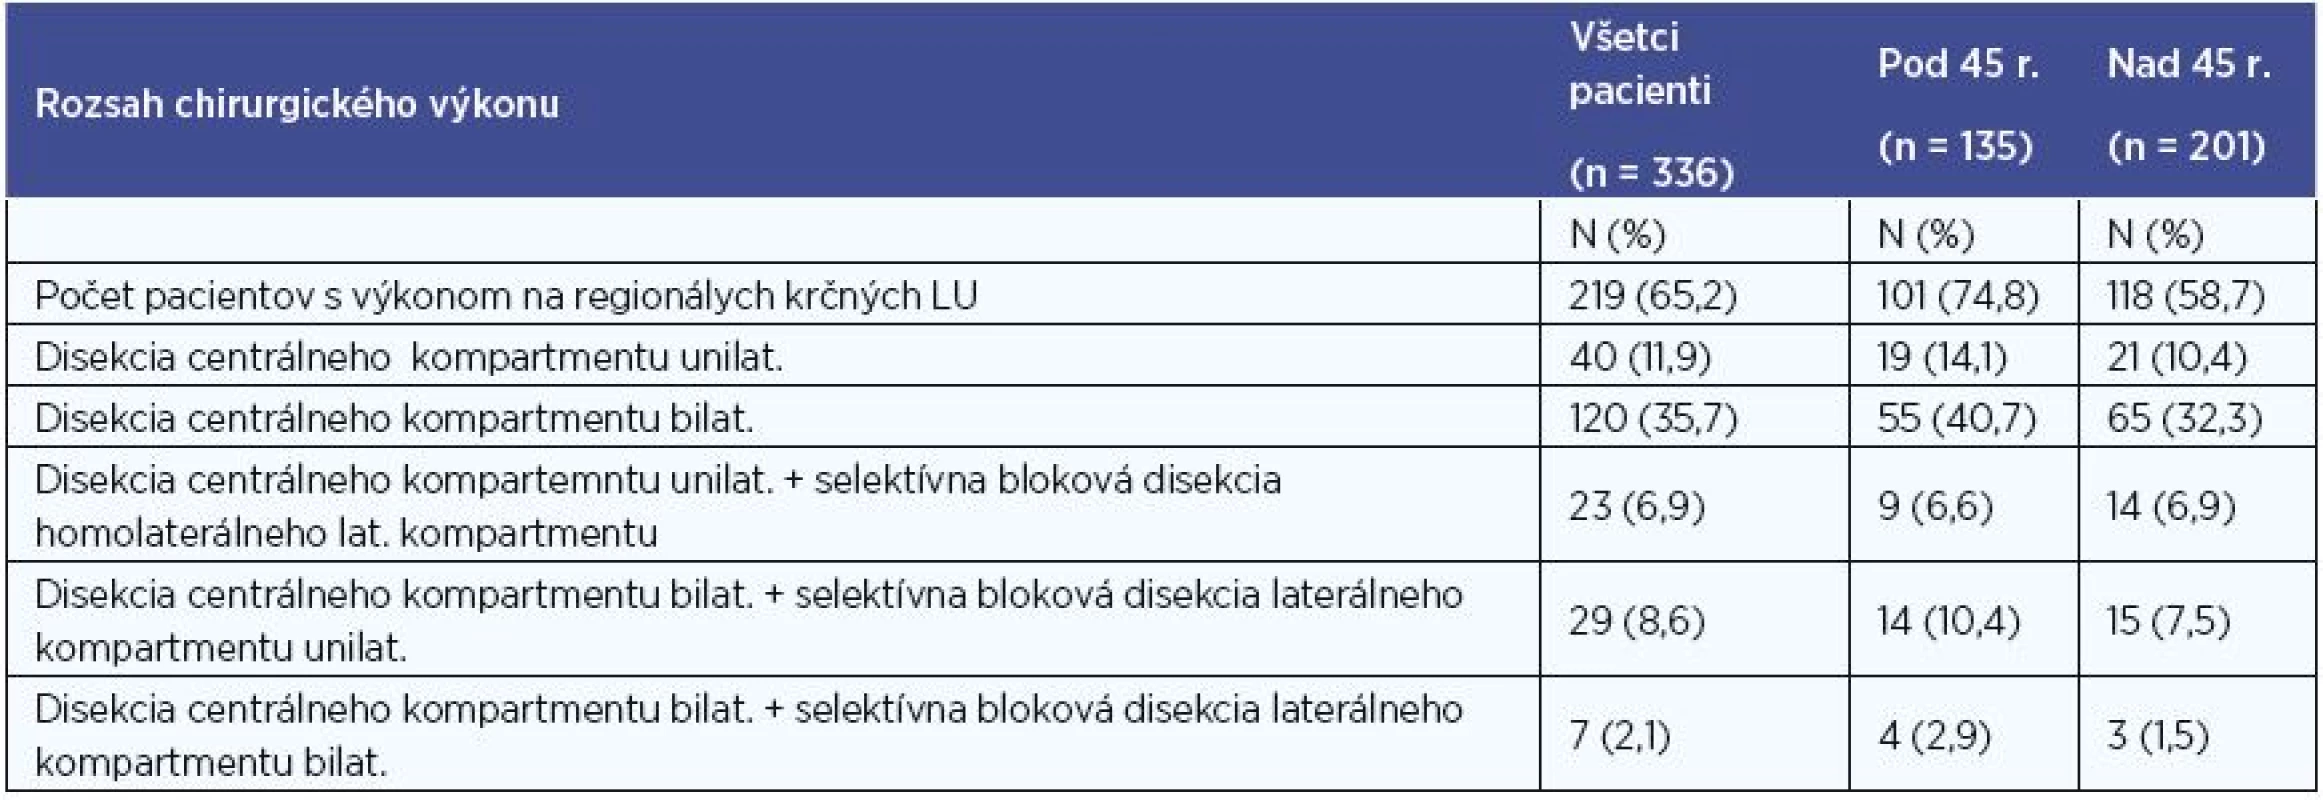 Počty pacientov po operácii regionálnych krčných LU.